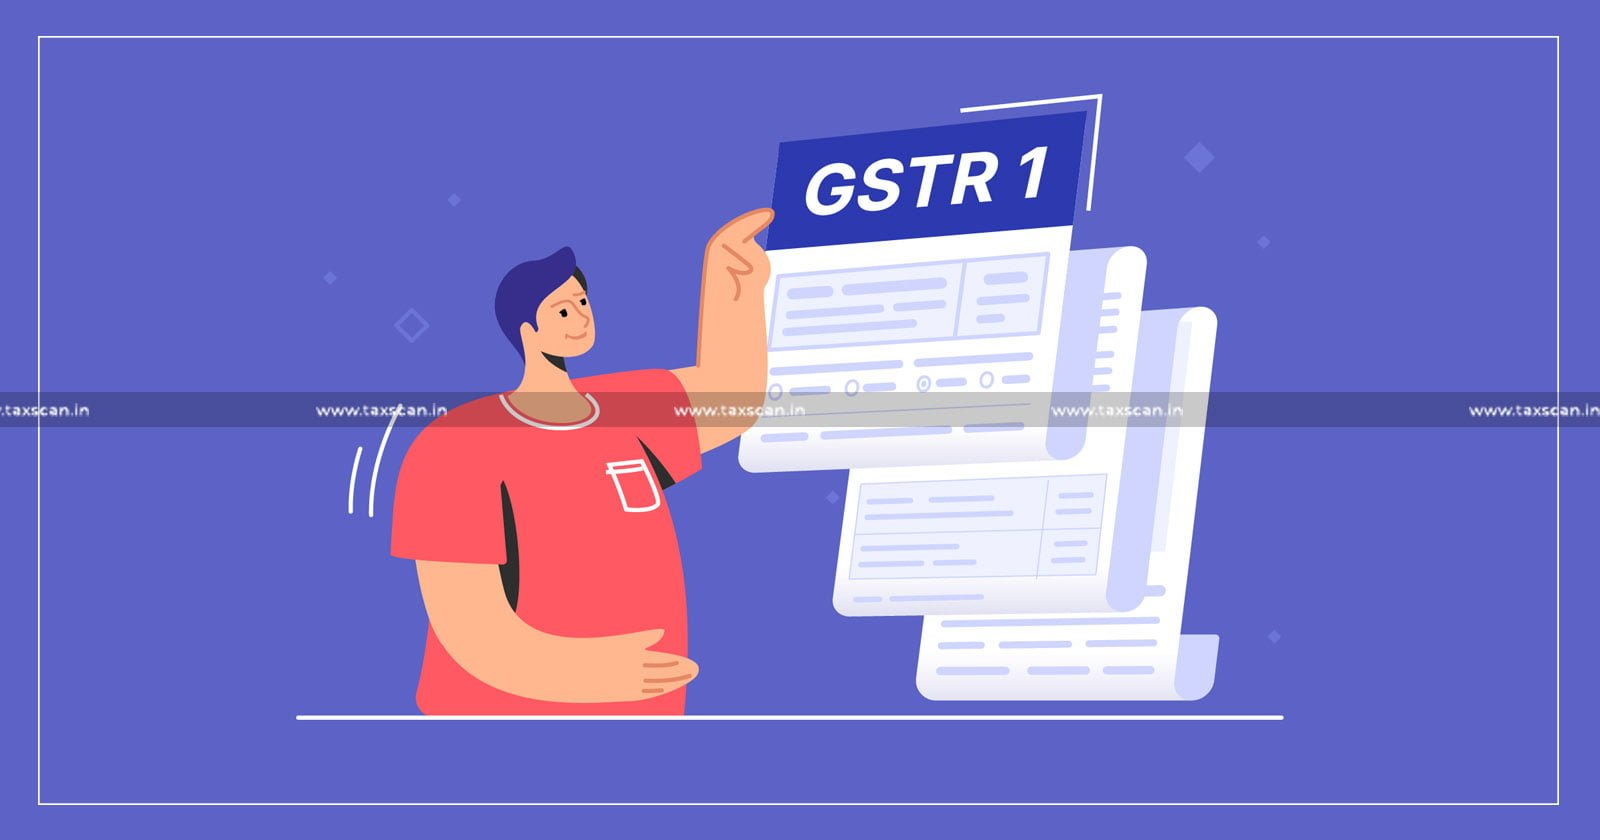 GST - GSTN - GSTN advisory - GSTR 1 - GSTR 1 Filing - IFF filing - GSTN 2024 updates - GSTR 1 filing guidelines - taxscan